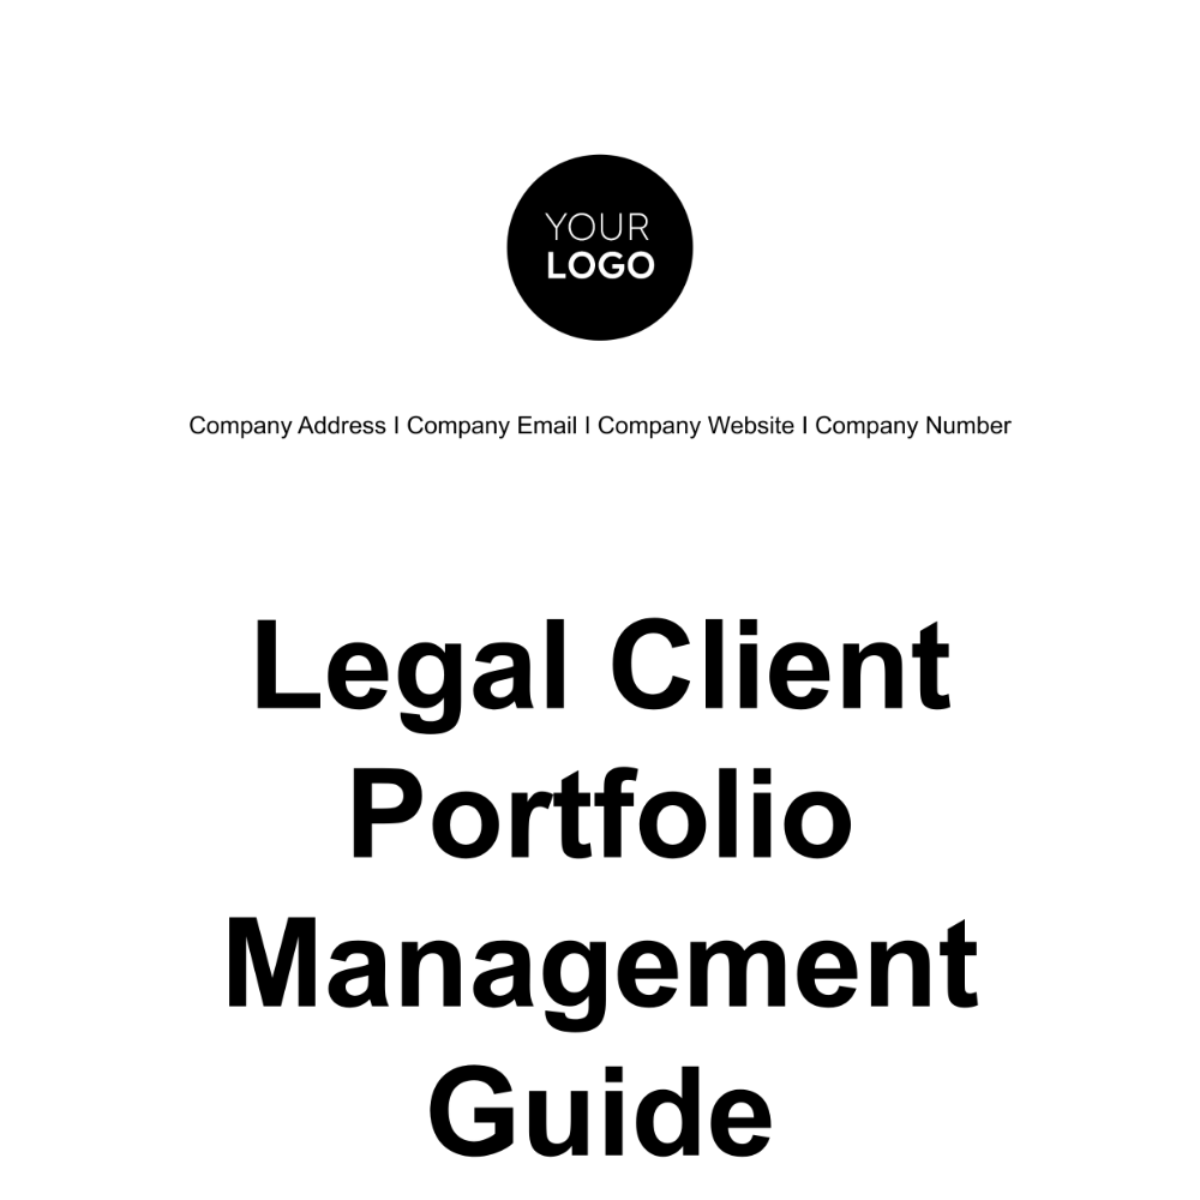 Legal Client Portfolio Management Guide Template